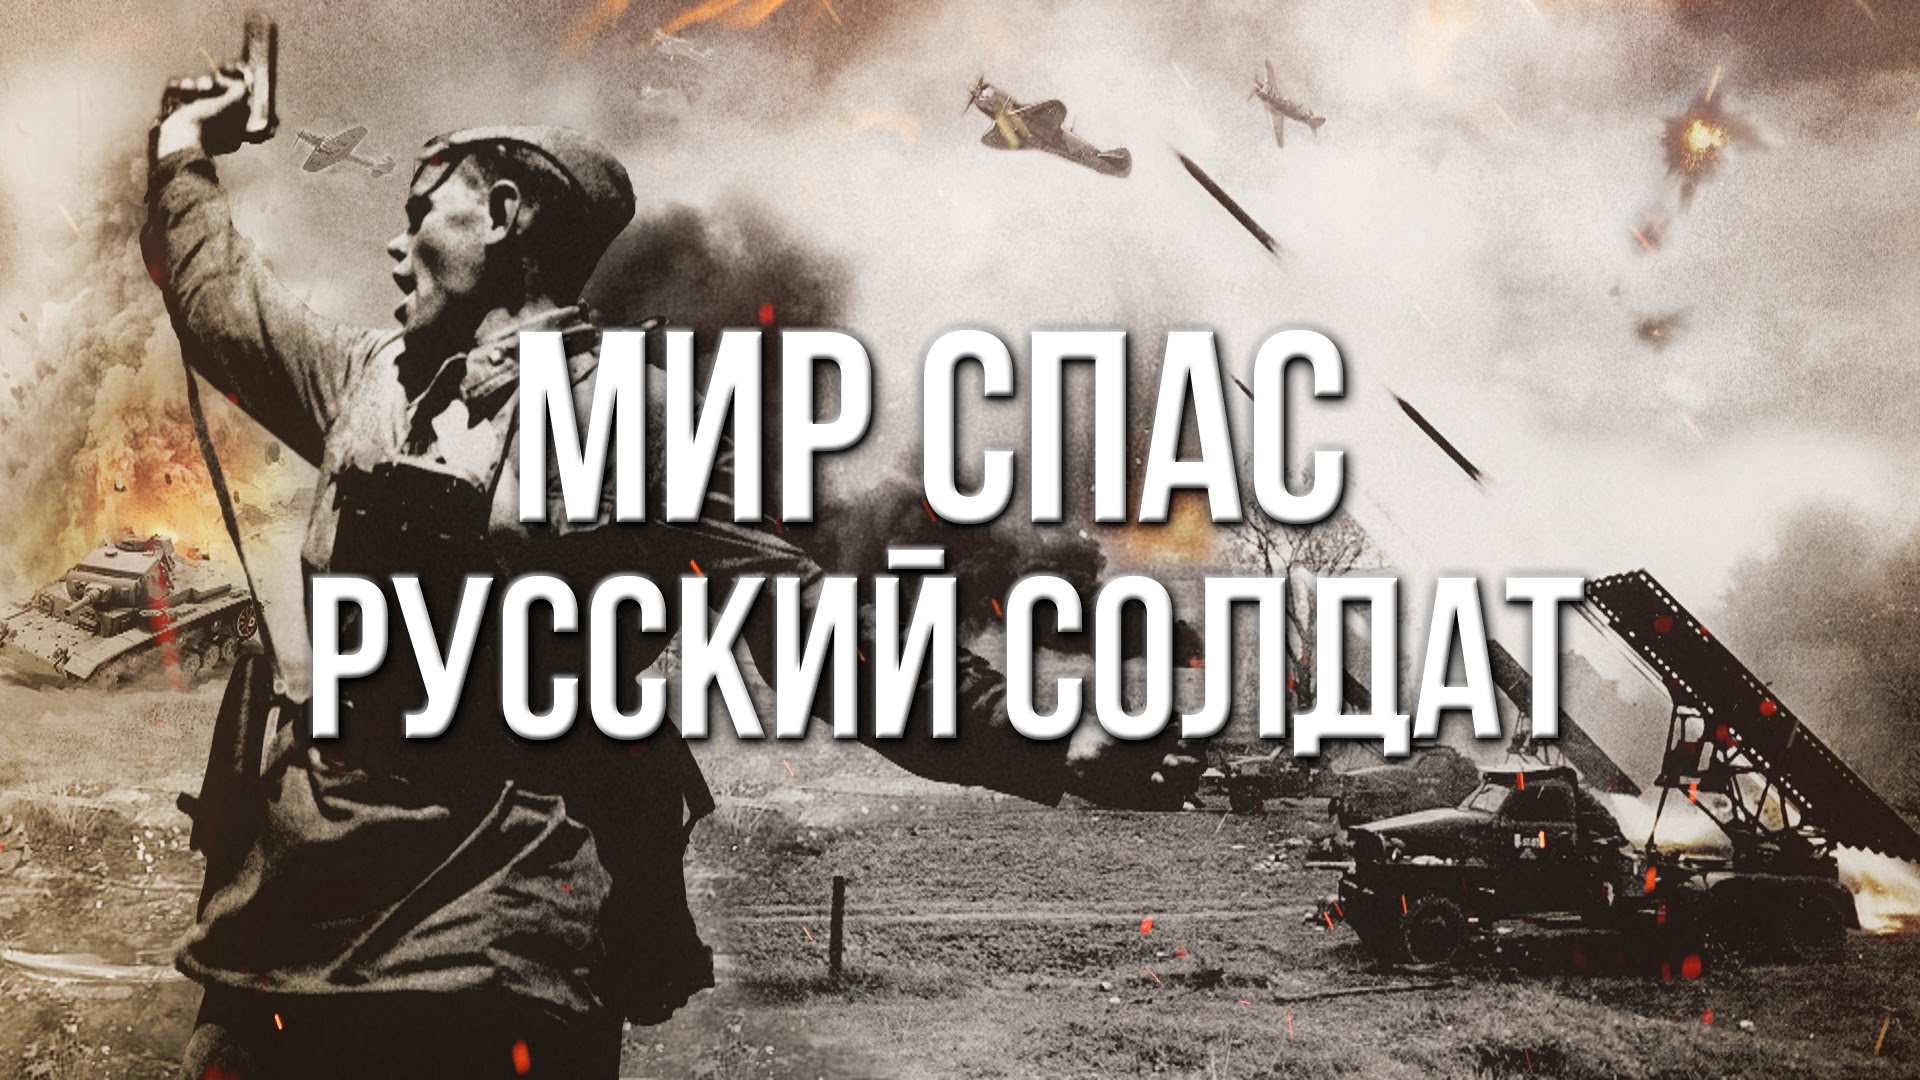 Россия никогда не воевала. Ми спас русский солдат. Помни мир мир спас Советский солдат. Русский солдат спасает мир.